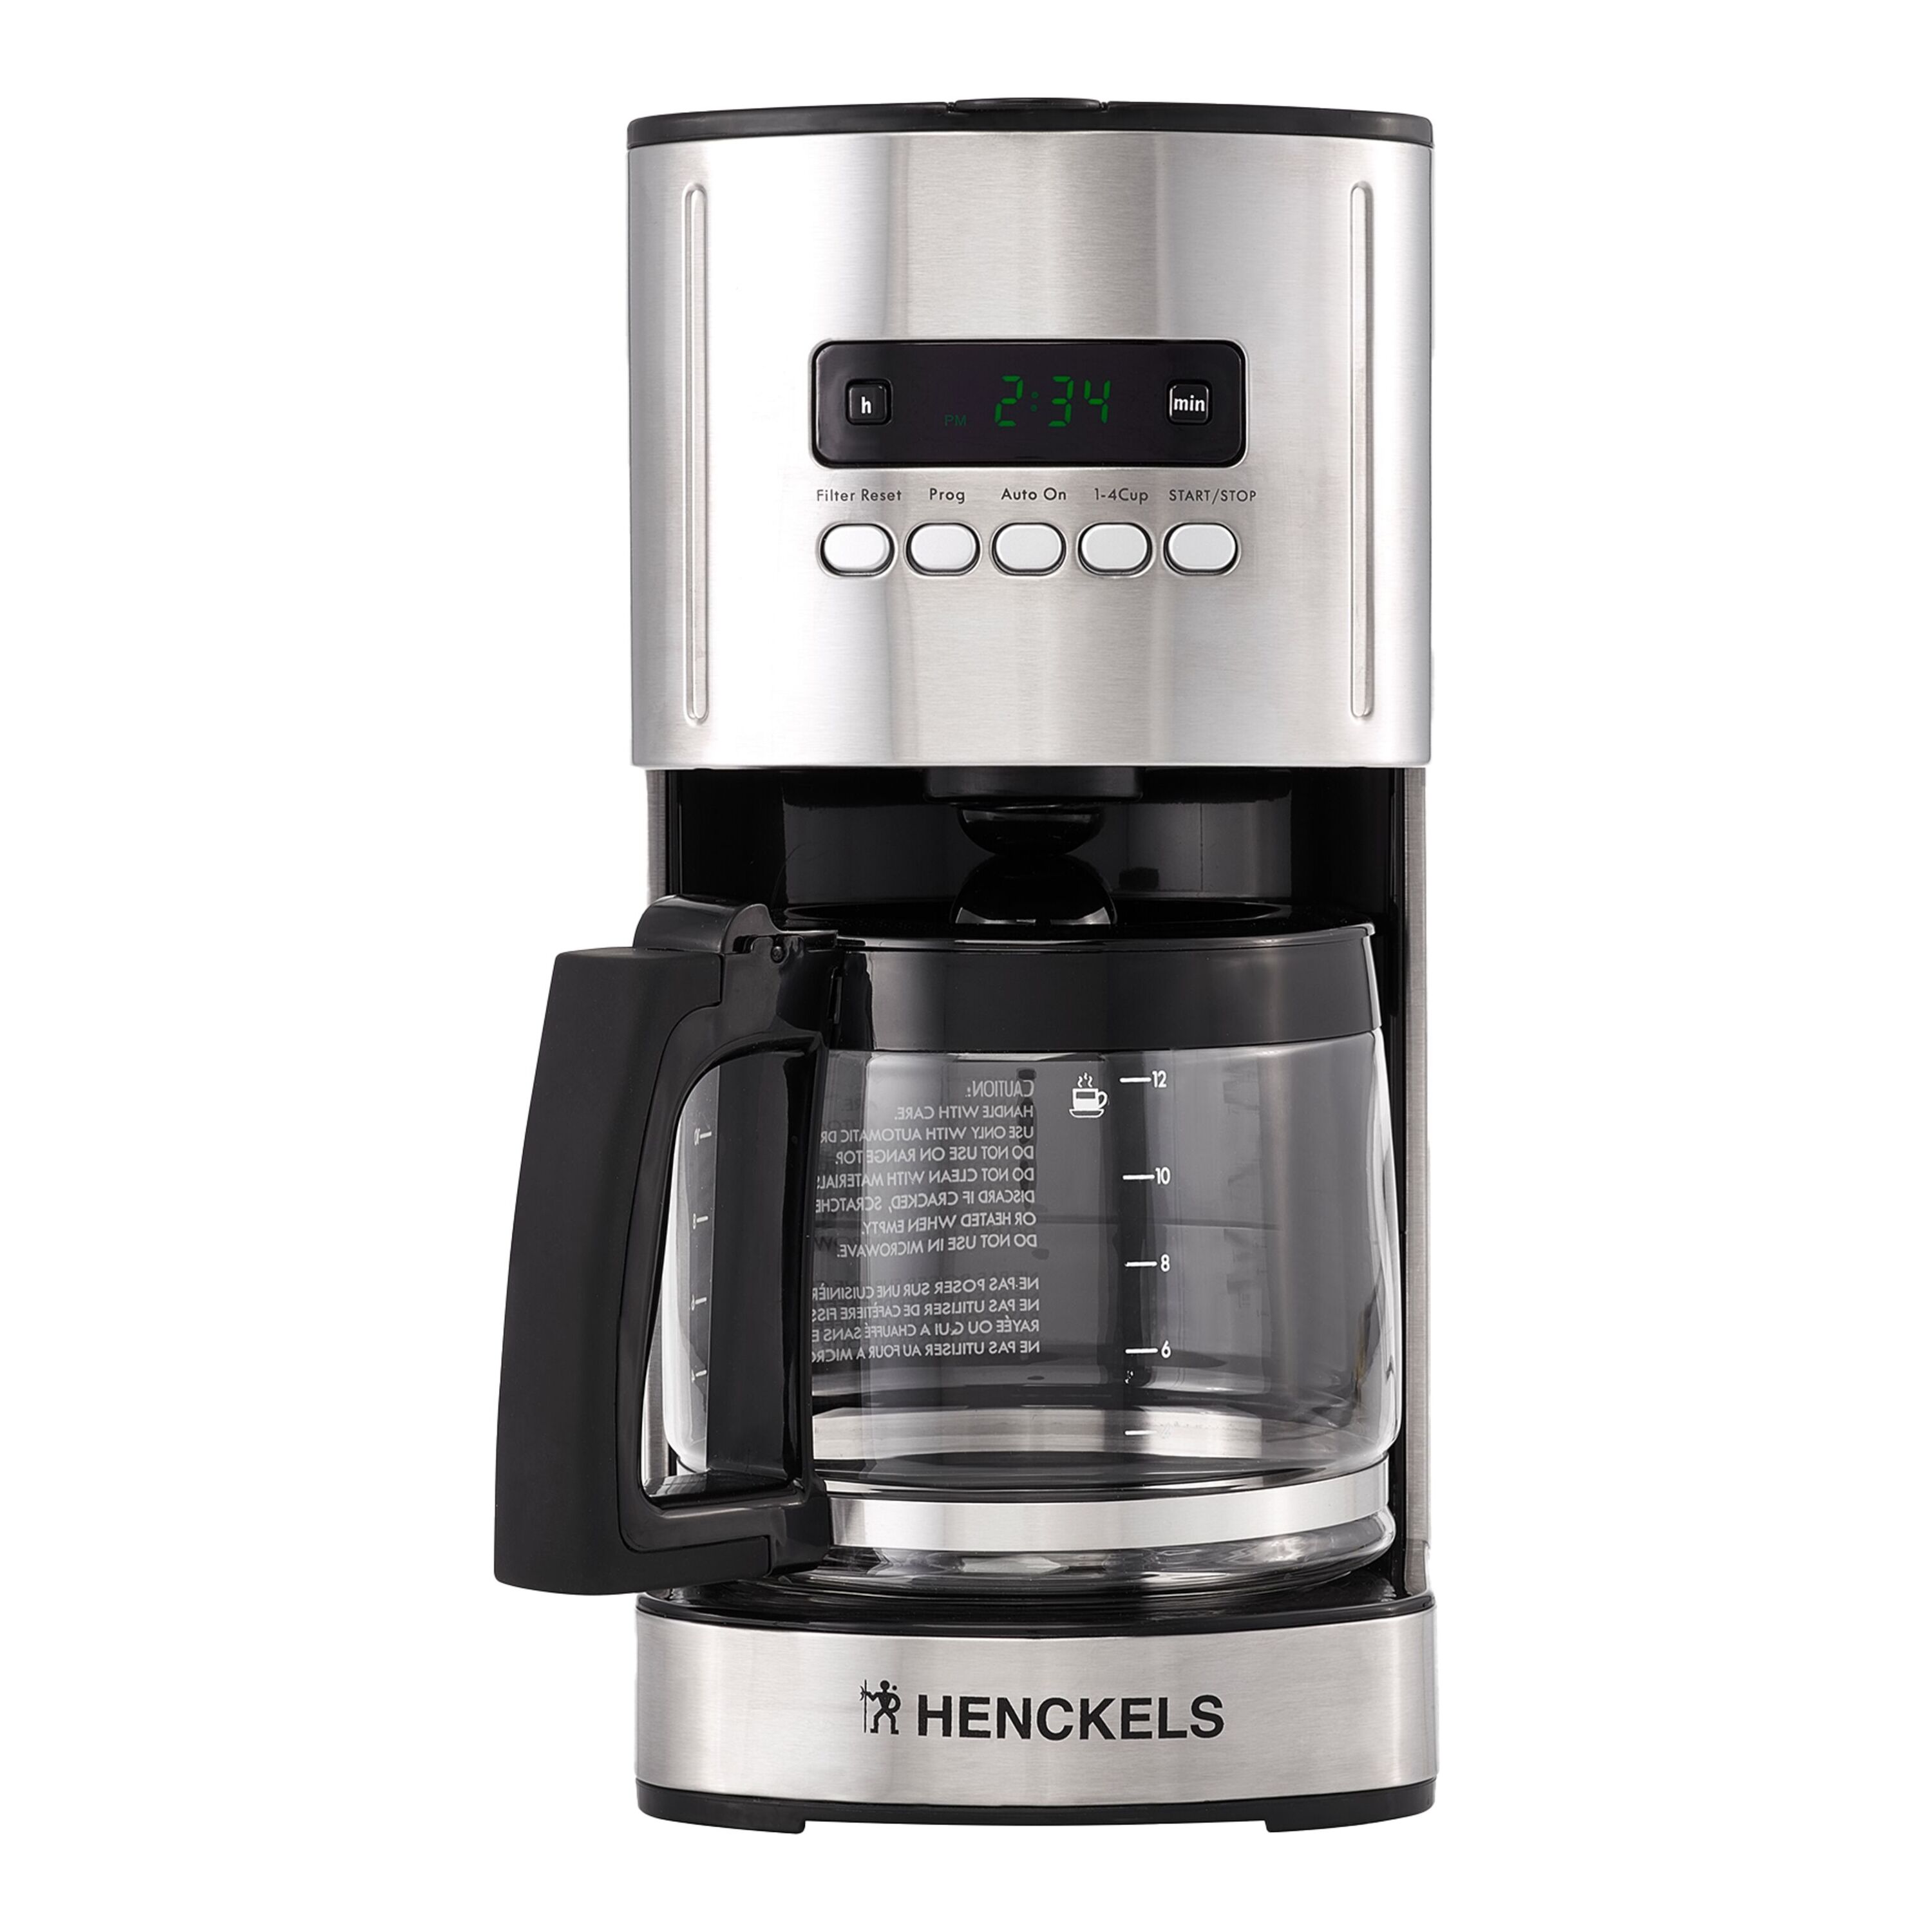 Buy Henckels Drip coffee maker